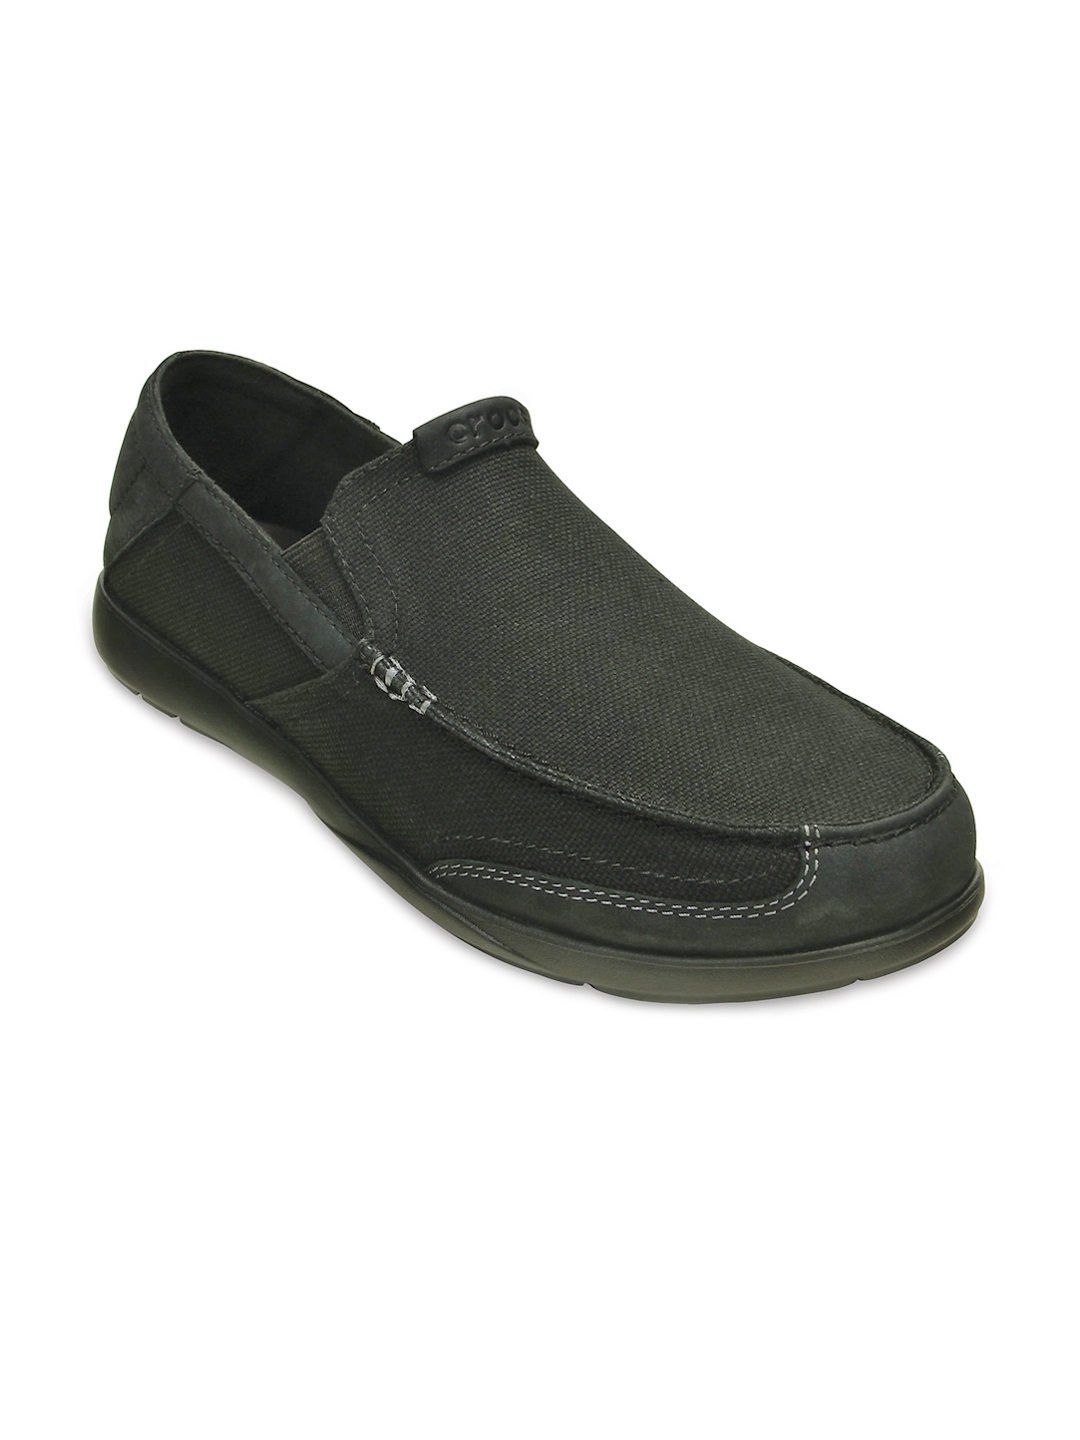 Buy Crocs Walu Men Black Casual Shoes - Casual Shoes for Men 1310346 ...